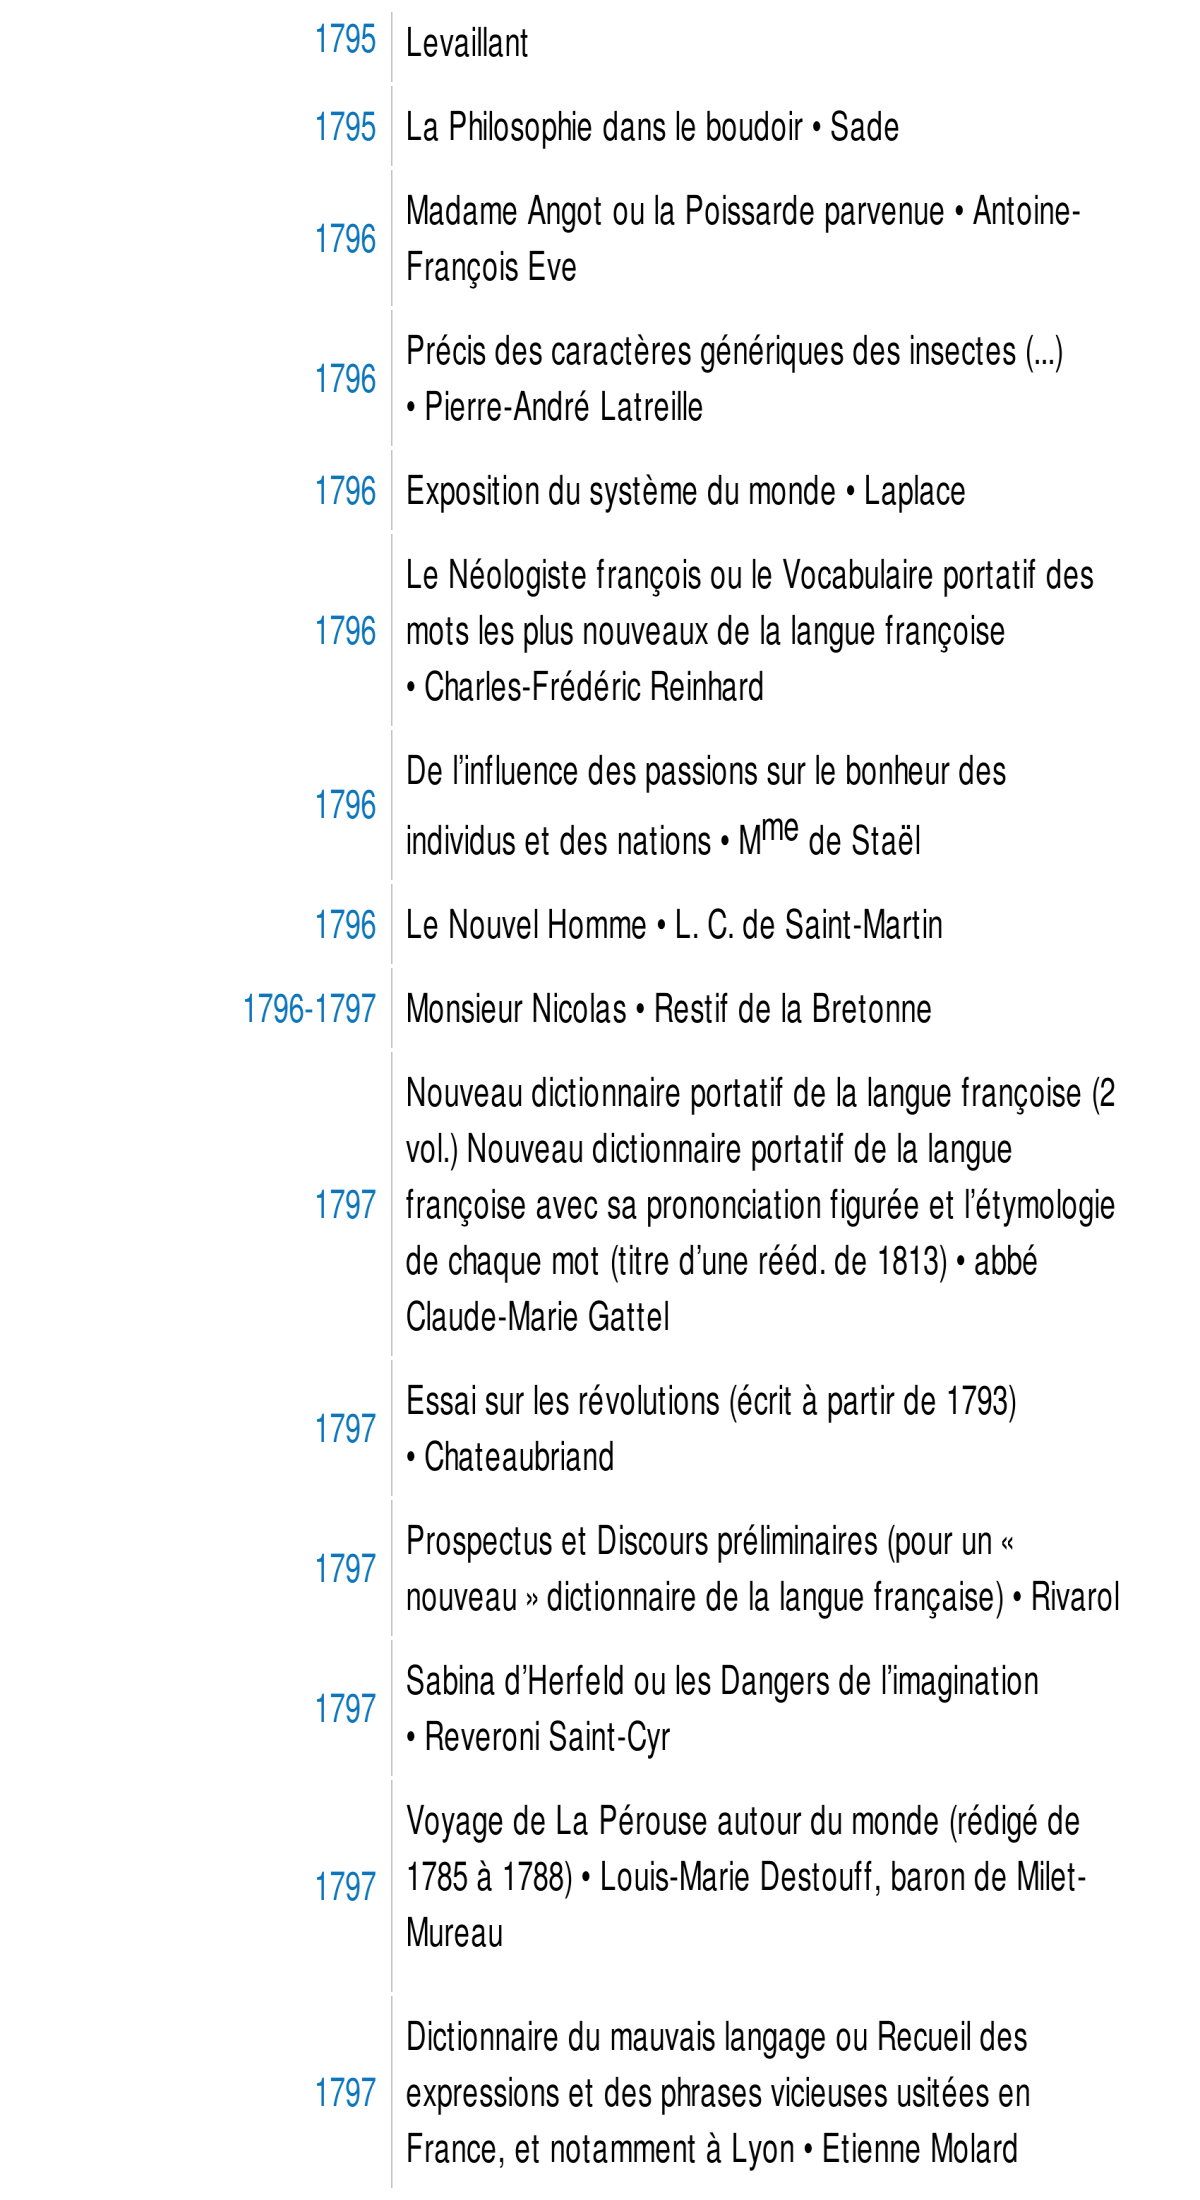 Prévisualisation du document 1793-1794

Révolution de France o Jacques Mallet du Pan
Discours et rapports o S aint-Just

av.